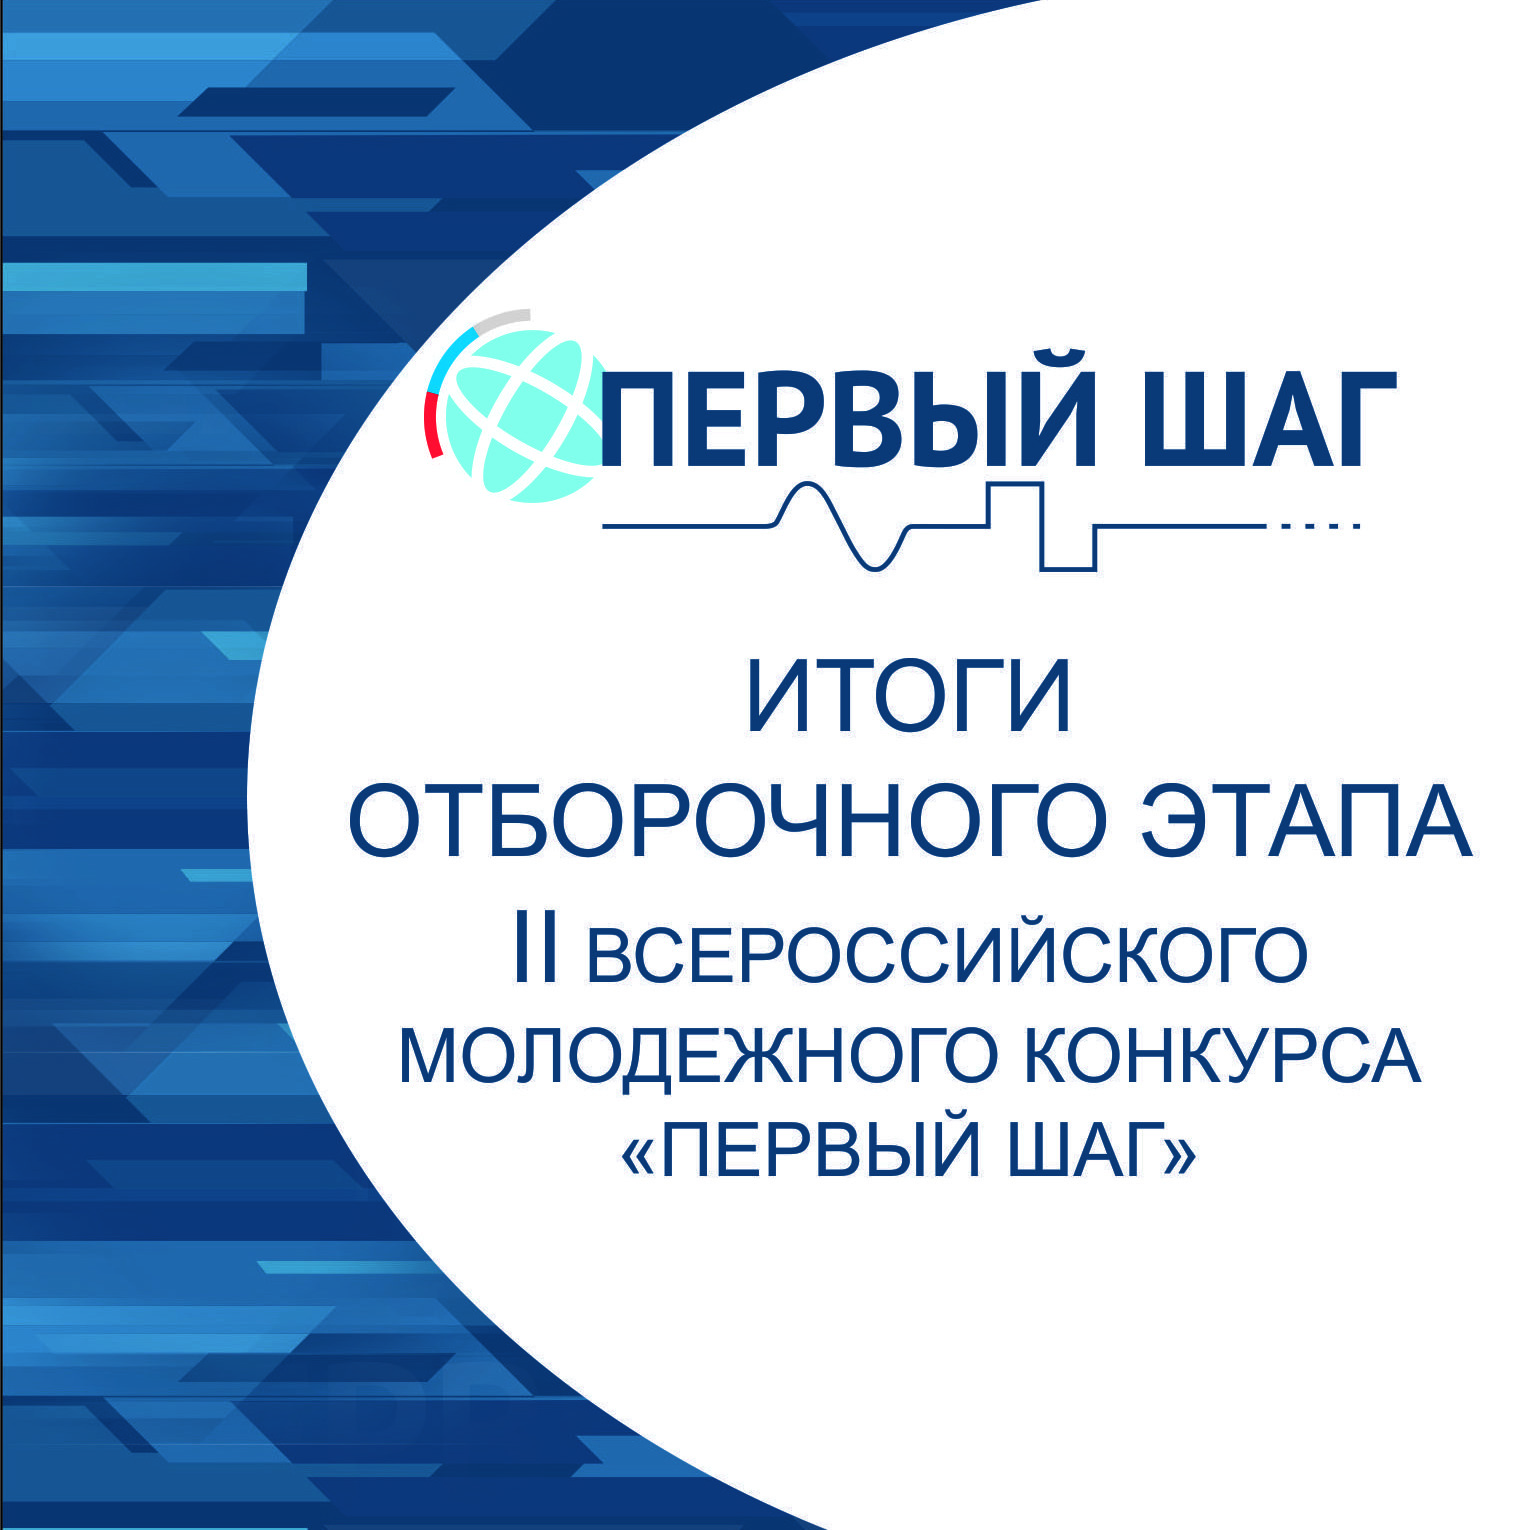 Поздравляем победителей отборочного этапа II Всероссийского научно-технического конкурса «Первый шаг»